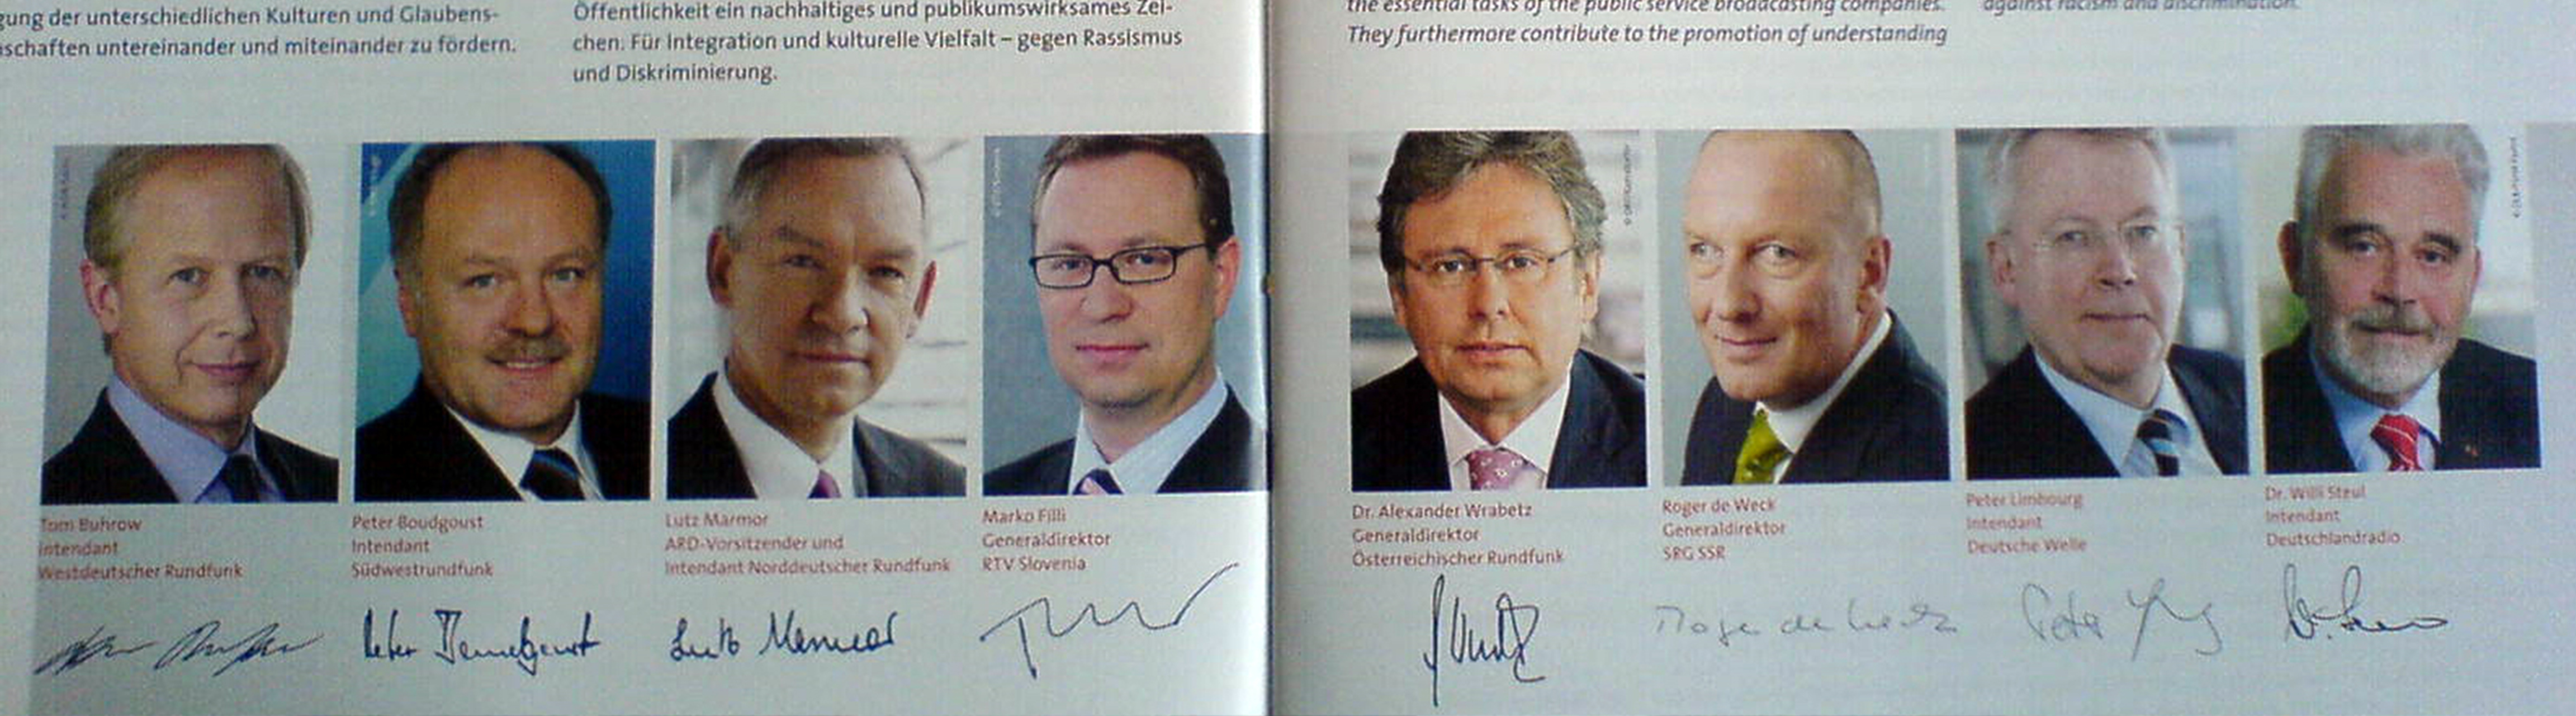 Auszug aus einer Broschüre mit Fotos von Intendanten von Rundfunksendern, alle Intendanten sind Herren in Anzügen mit Krawatte.